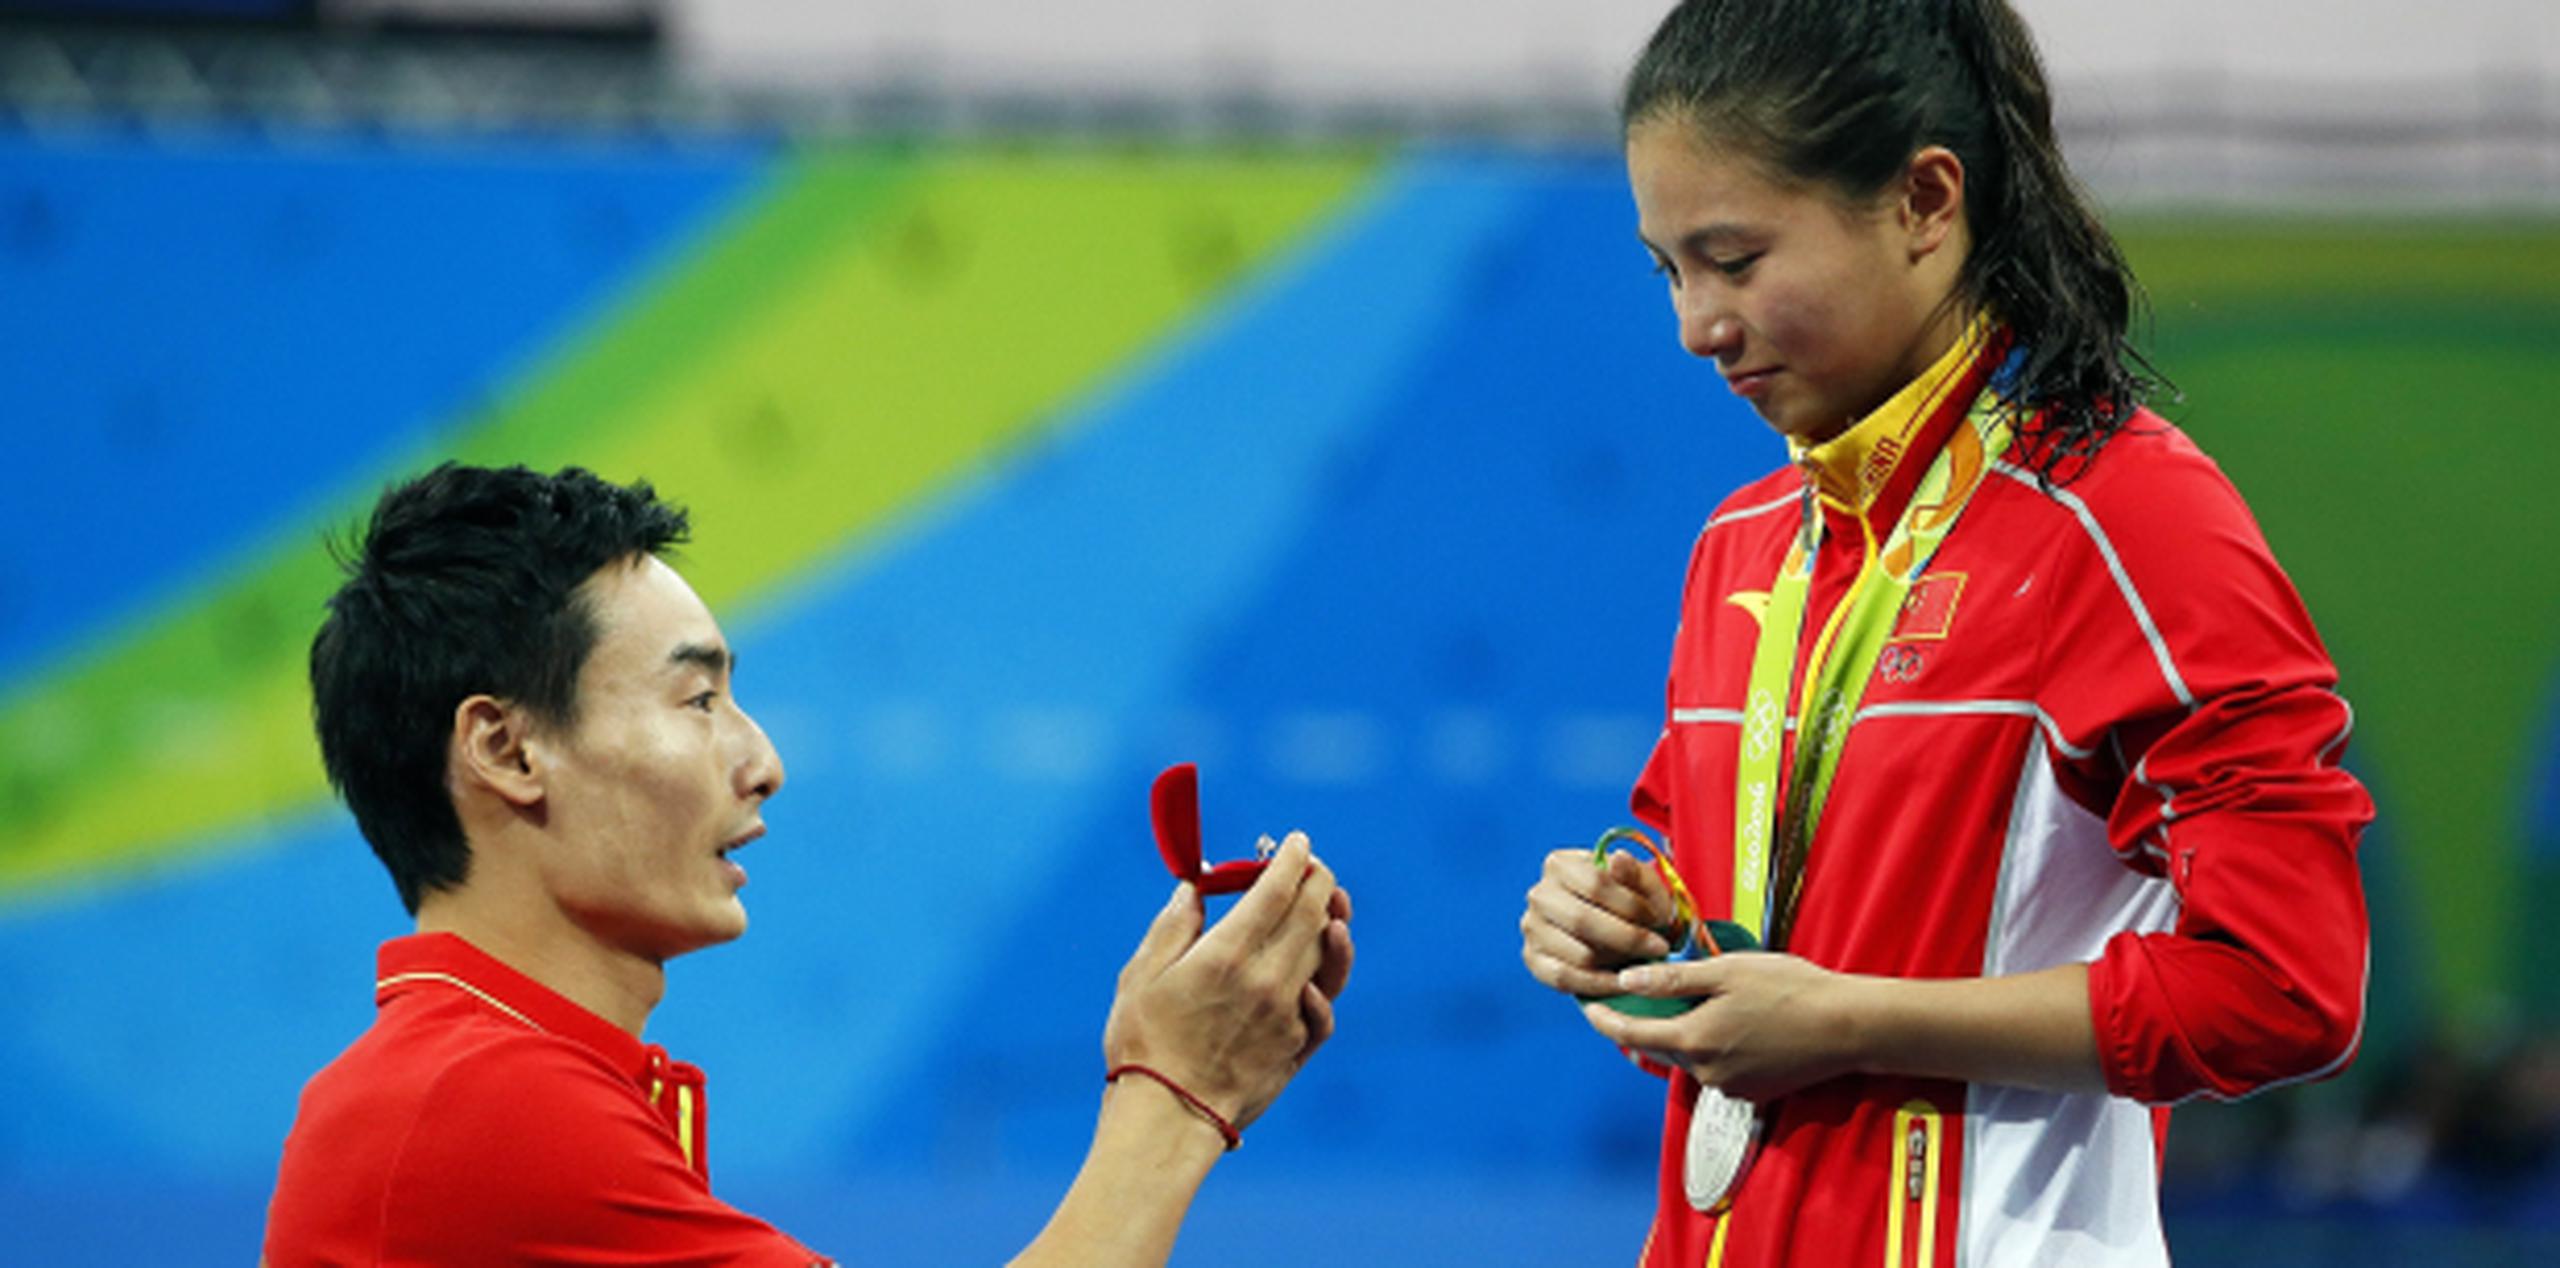 El clavadista Ki Qin se arrodilla para pedirle matrimonio a su novia, la clavadista He Zi, luego que ella recibiera la medalla de plata del evento de trampolín de tres metros. (EFE/EPA/PATRICK B. KRAEMER)
